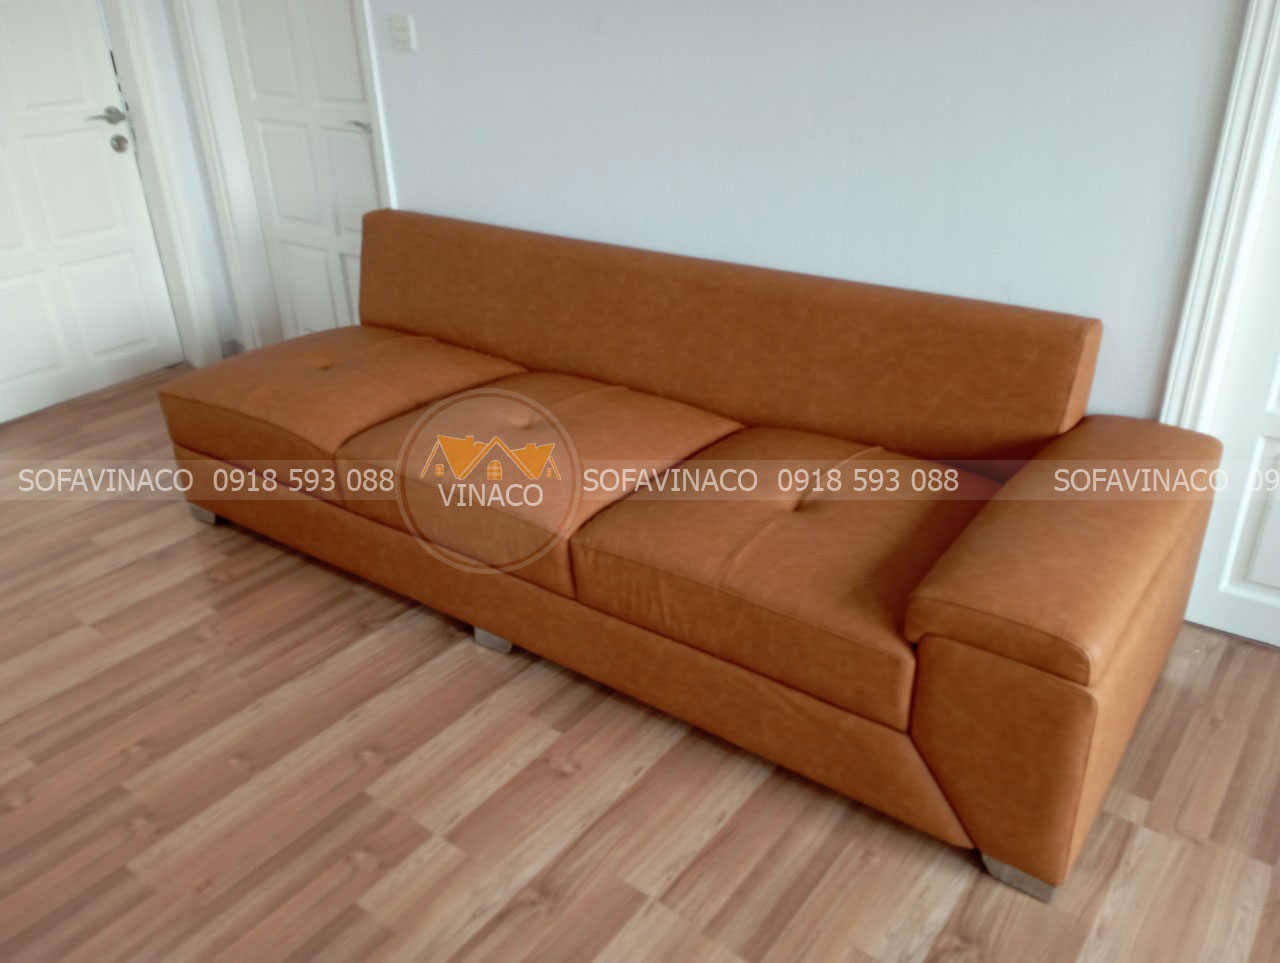 Sofa đã được thay đổi lớp vỏ bọc da mới sang sủa không gian phòng khách